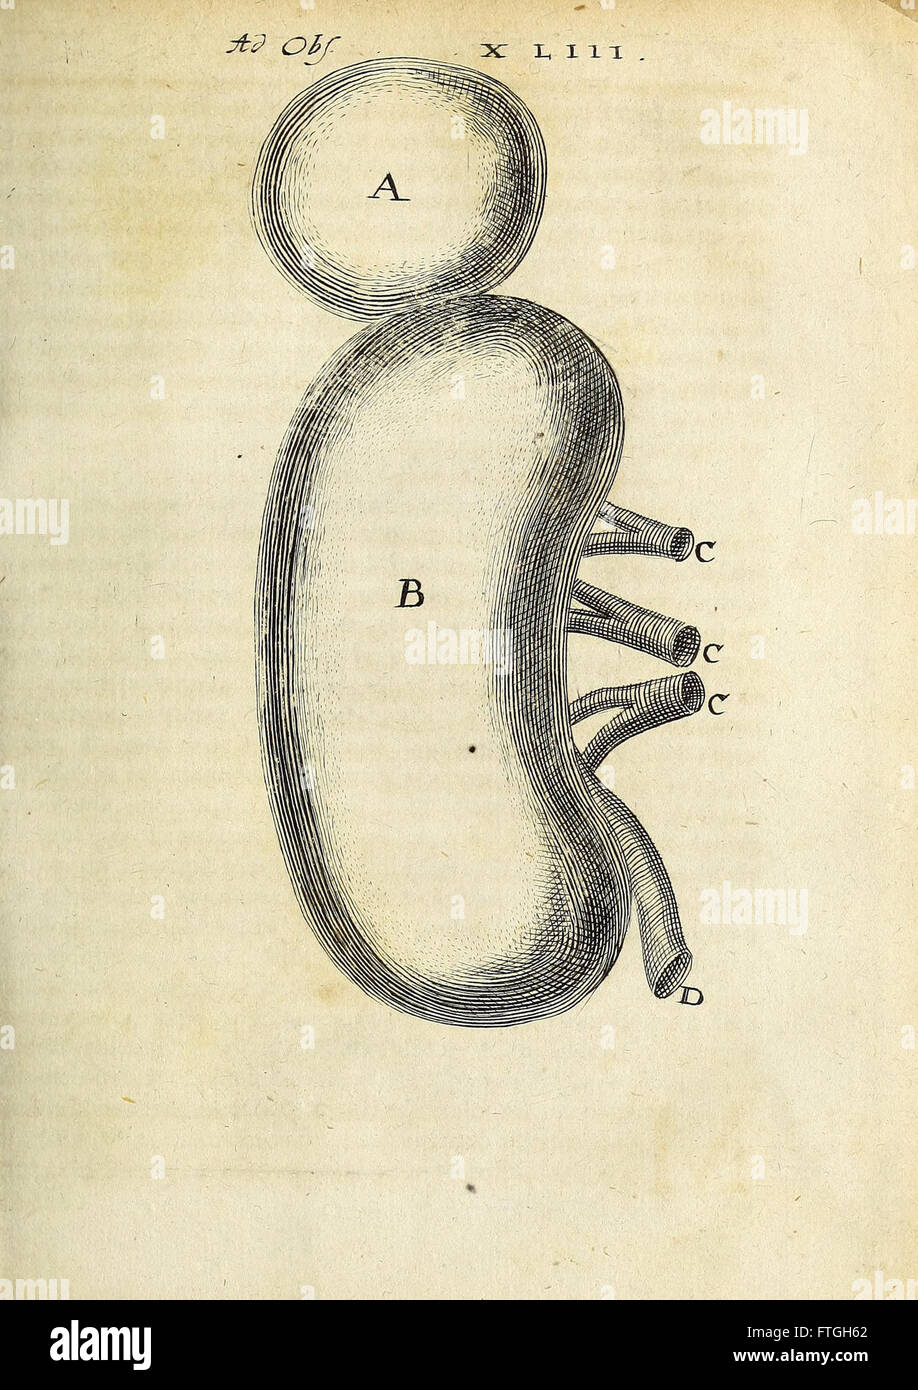 Miscellanea Curiosa Medico-Physica Academiae Naturae Curiosorum (1670) Foto de stock